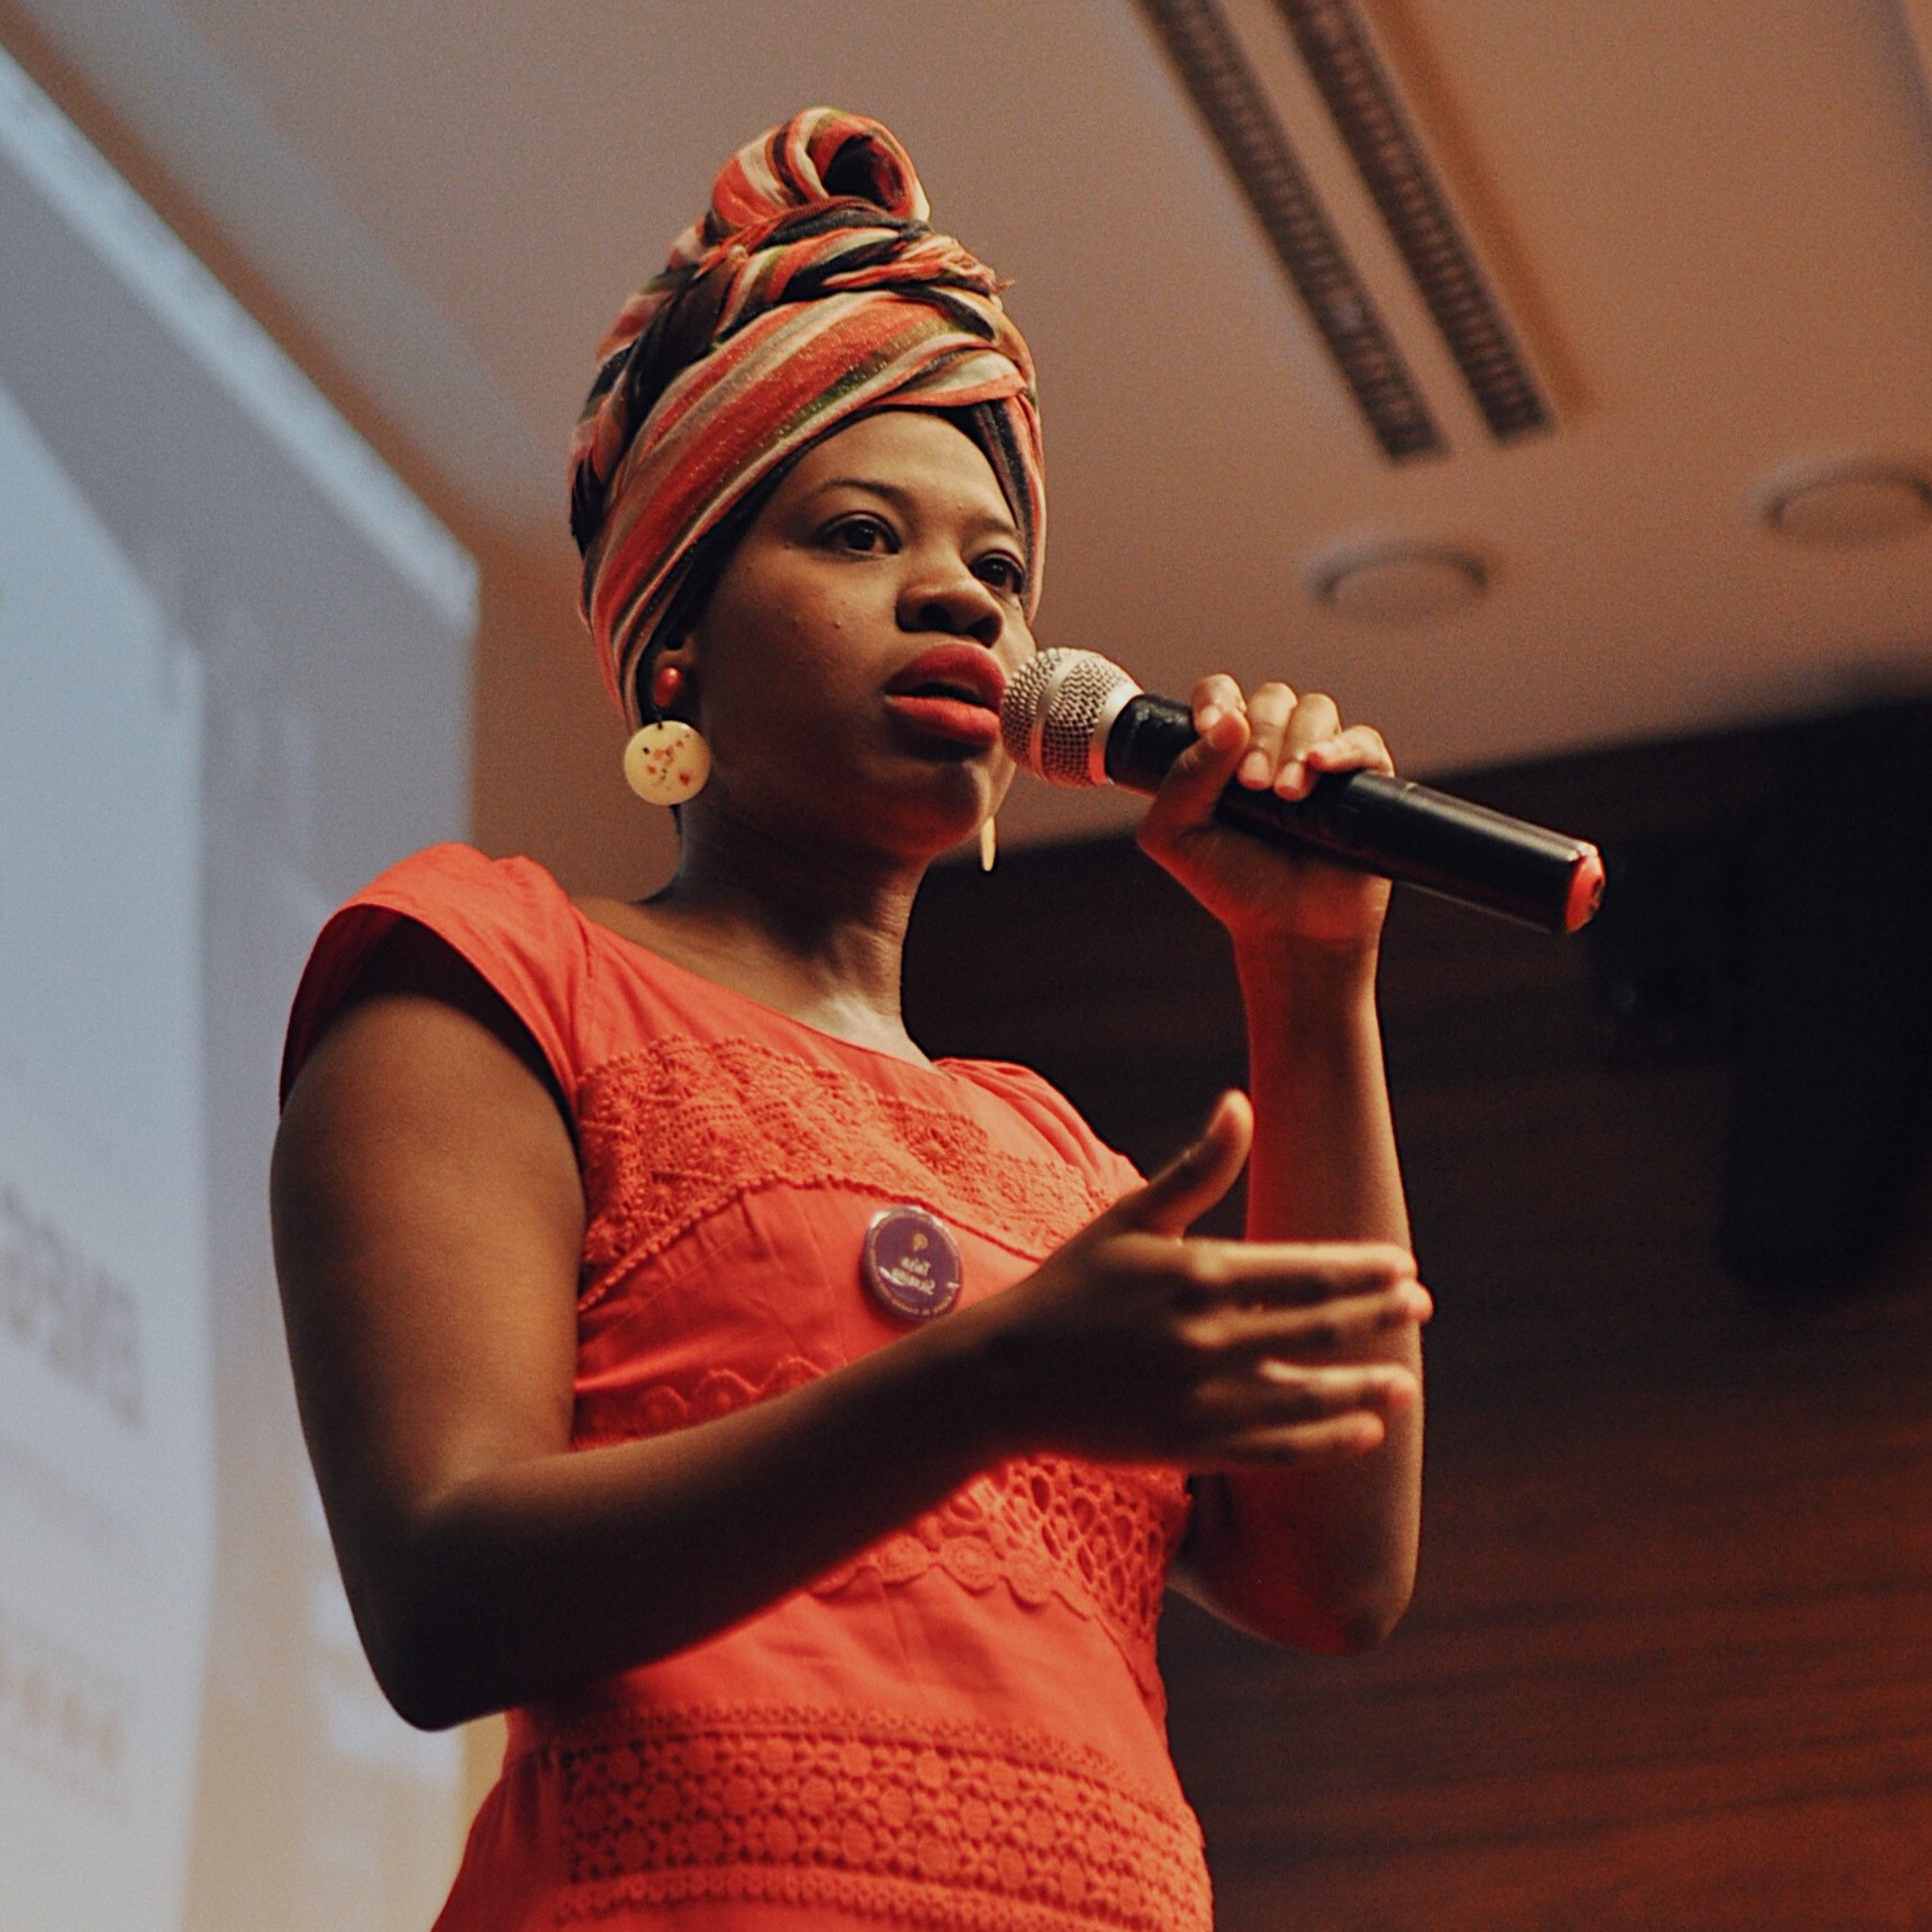 Mulher negra vestindo turbante e vestido laranja, na mão esquerda segura um microfone